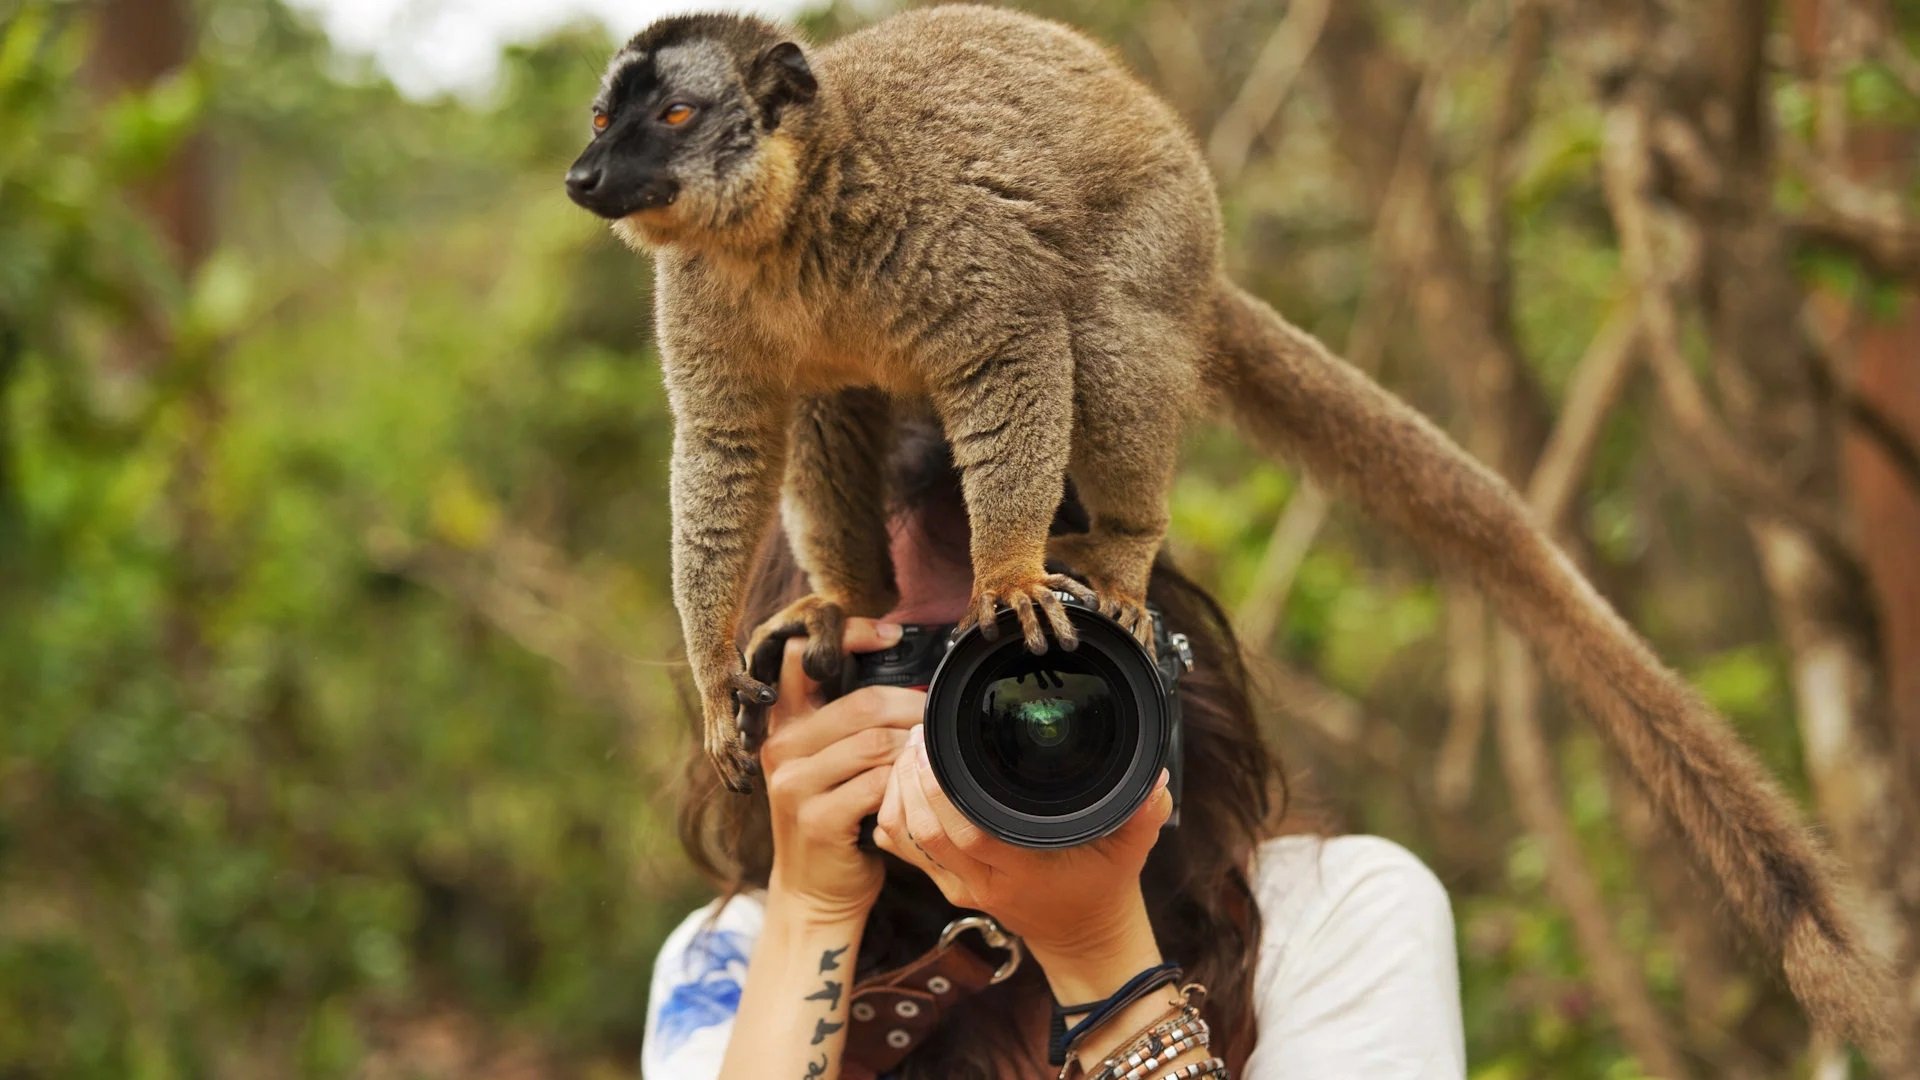 Interesting photo. Животные с фотоаппаратом. Фотограф и животные. Фотографирует животных. Смешные животные.